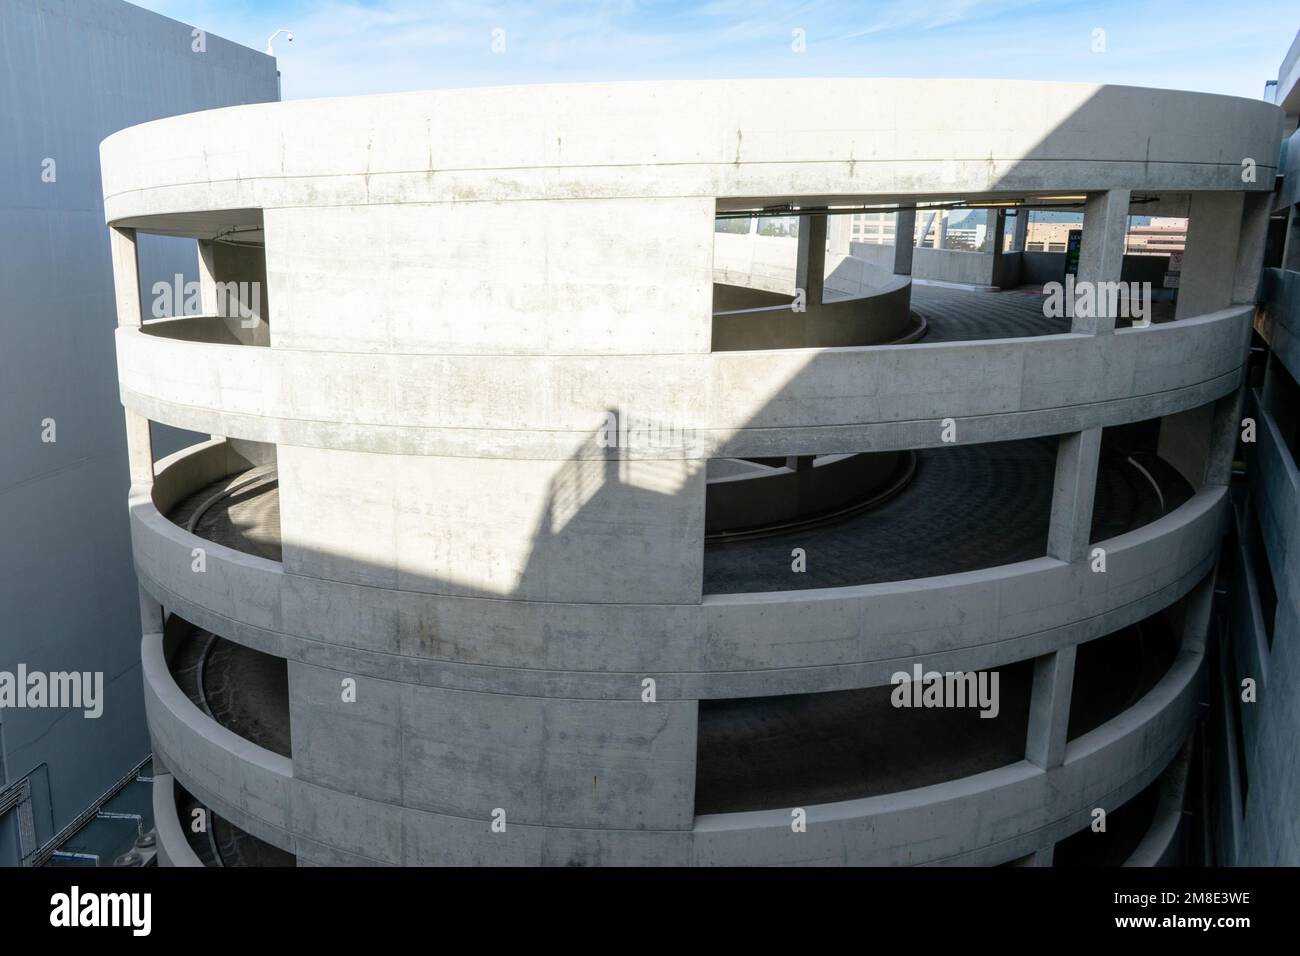 Circular, spiral parking garage ramp at multi story parking garage. Stock Photo